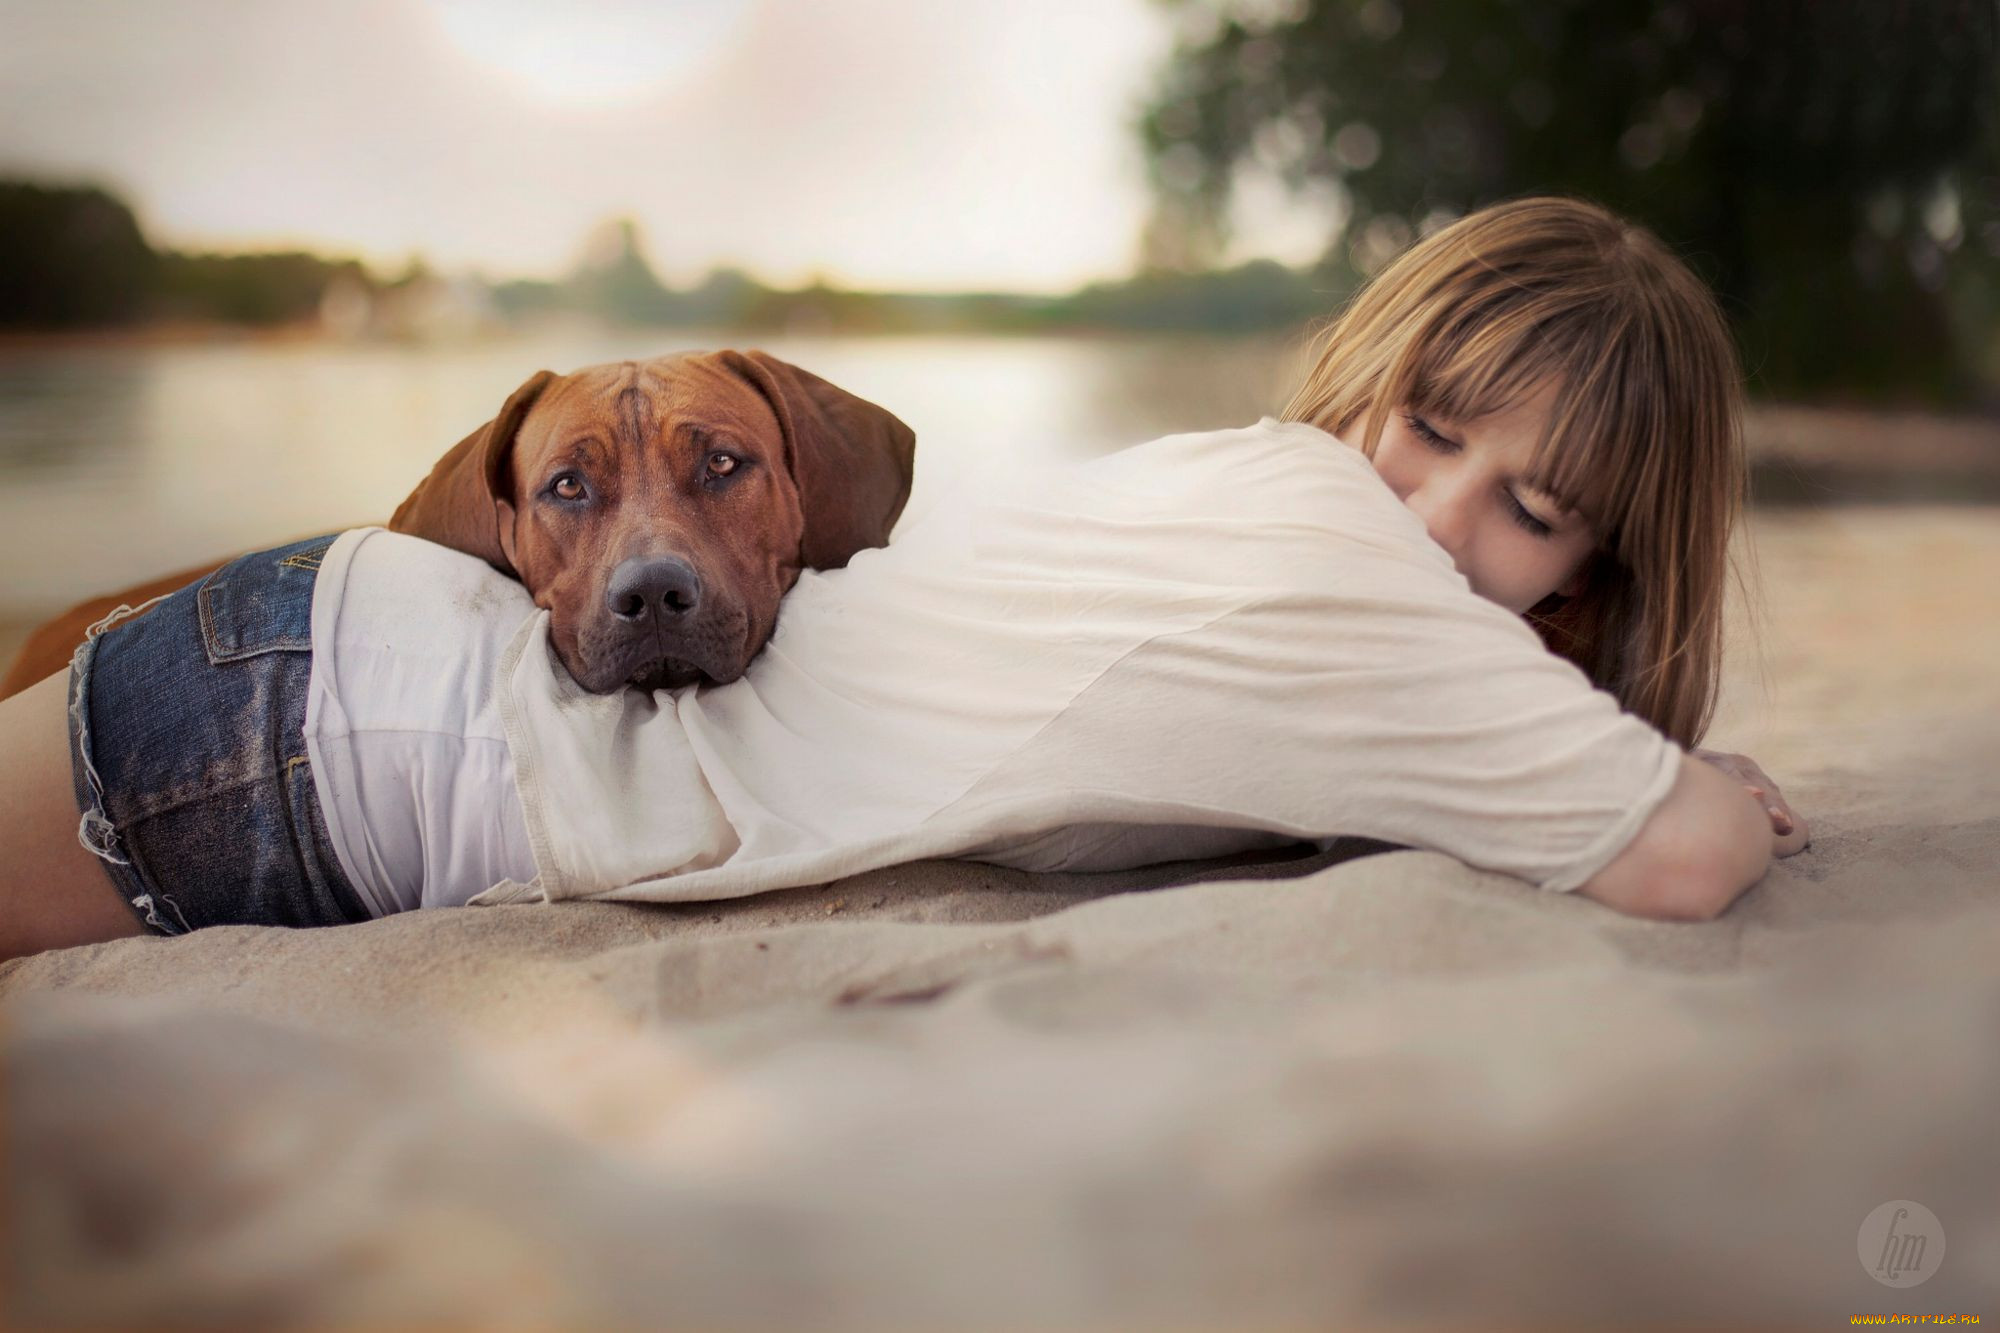 Woman 3 dog. Фотосессия с собакой. Девушка с собакой. Девушка с собакой картинки. Собака лежит на человеке.